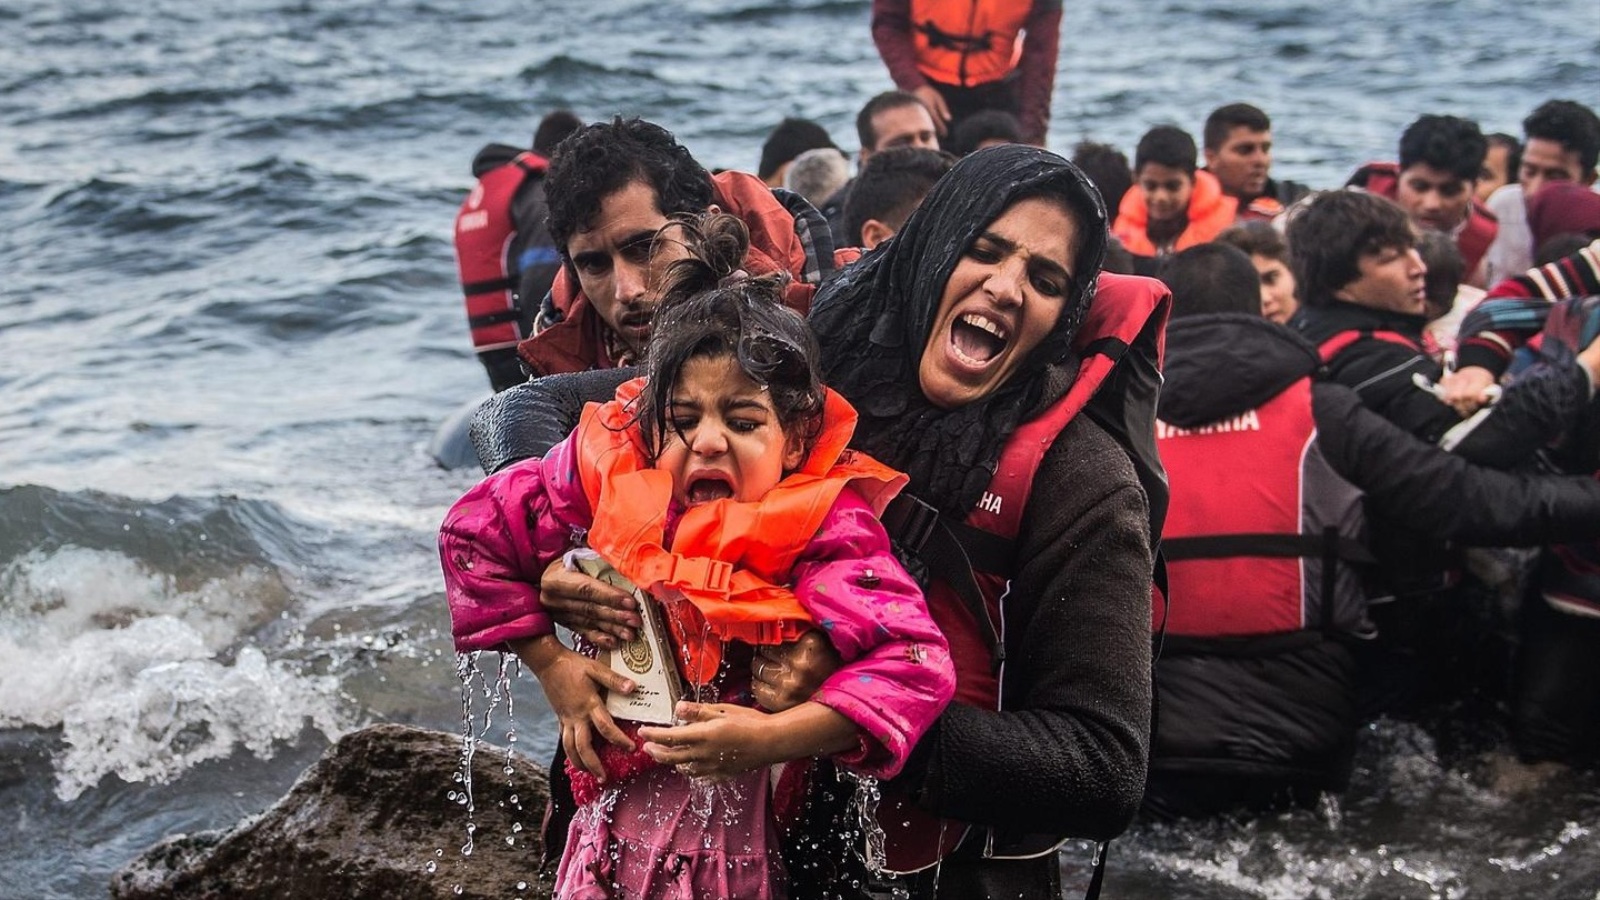 لاجئون يصلون إلى شاطئ جزيرة ليسبوس اليونانية اليوم الجمعة رغم الطقس السيء (الأوروبية)